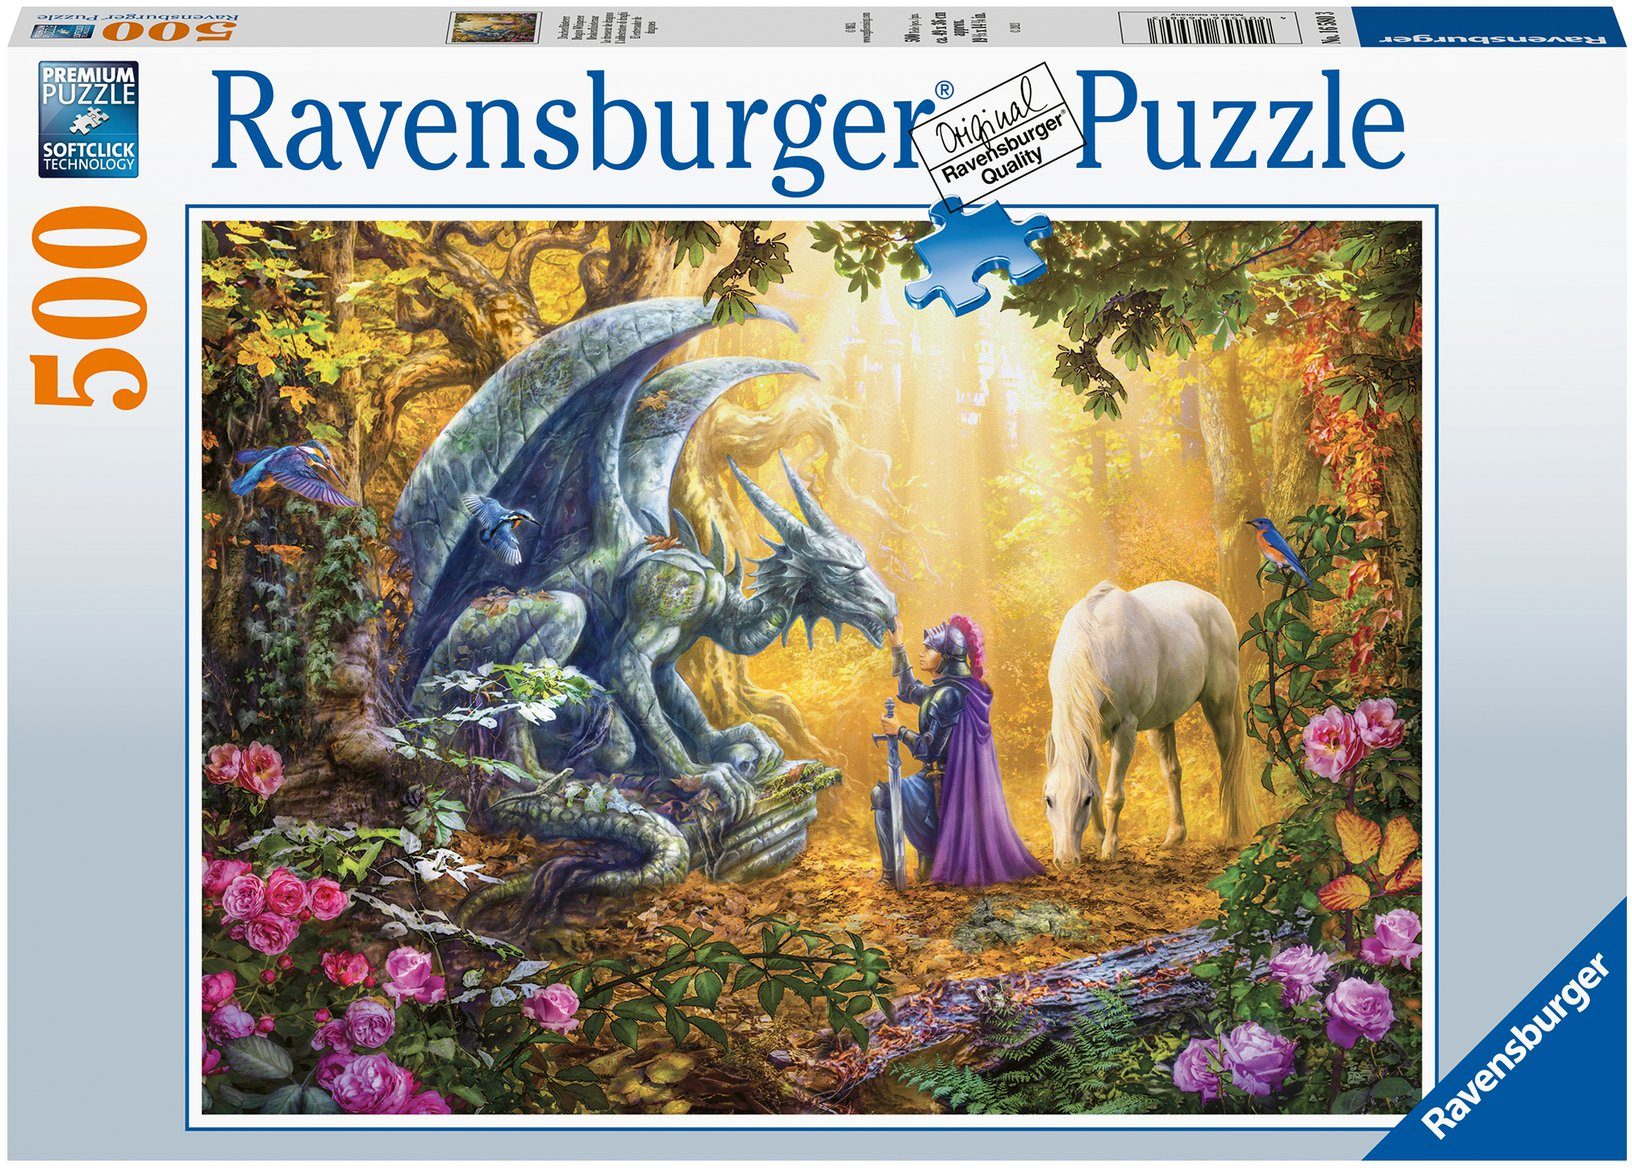 Ravensburger Puzzle Drachenflüsterer, 500 Puzzleteile, Made in Germany, FSC® - schützt Wald - weltweit